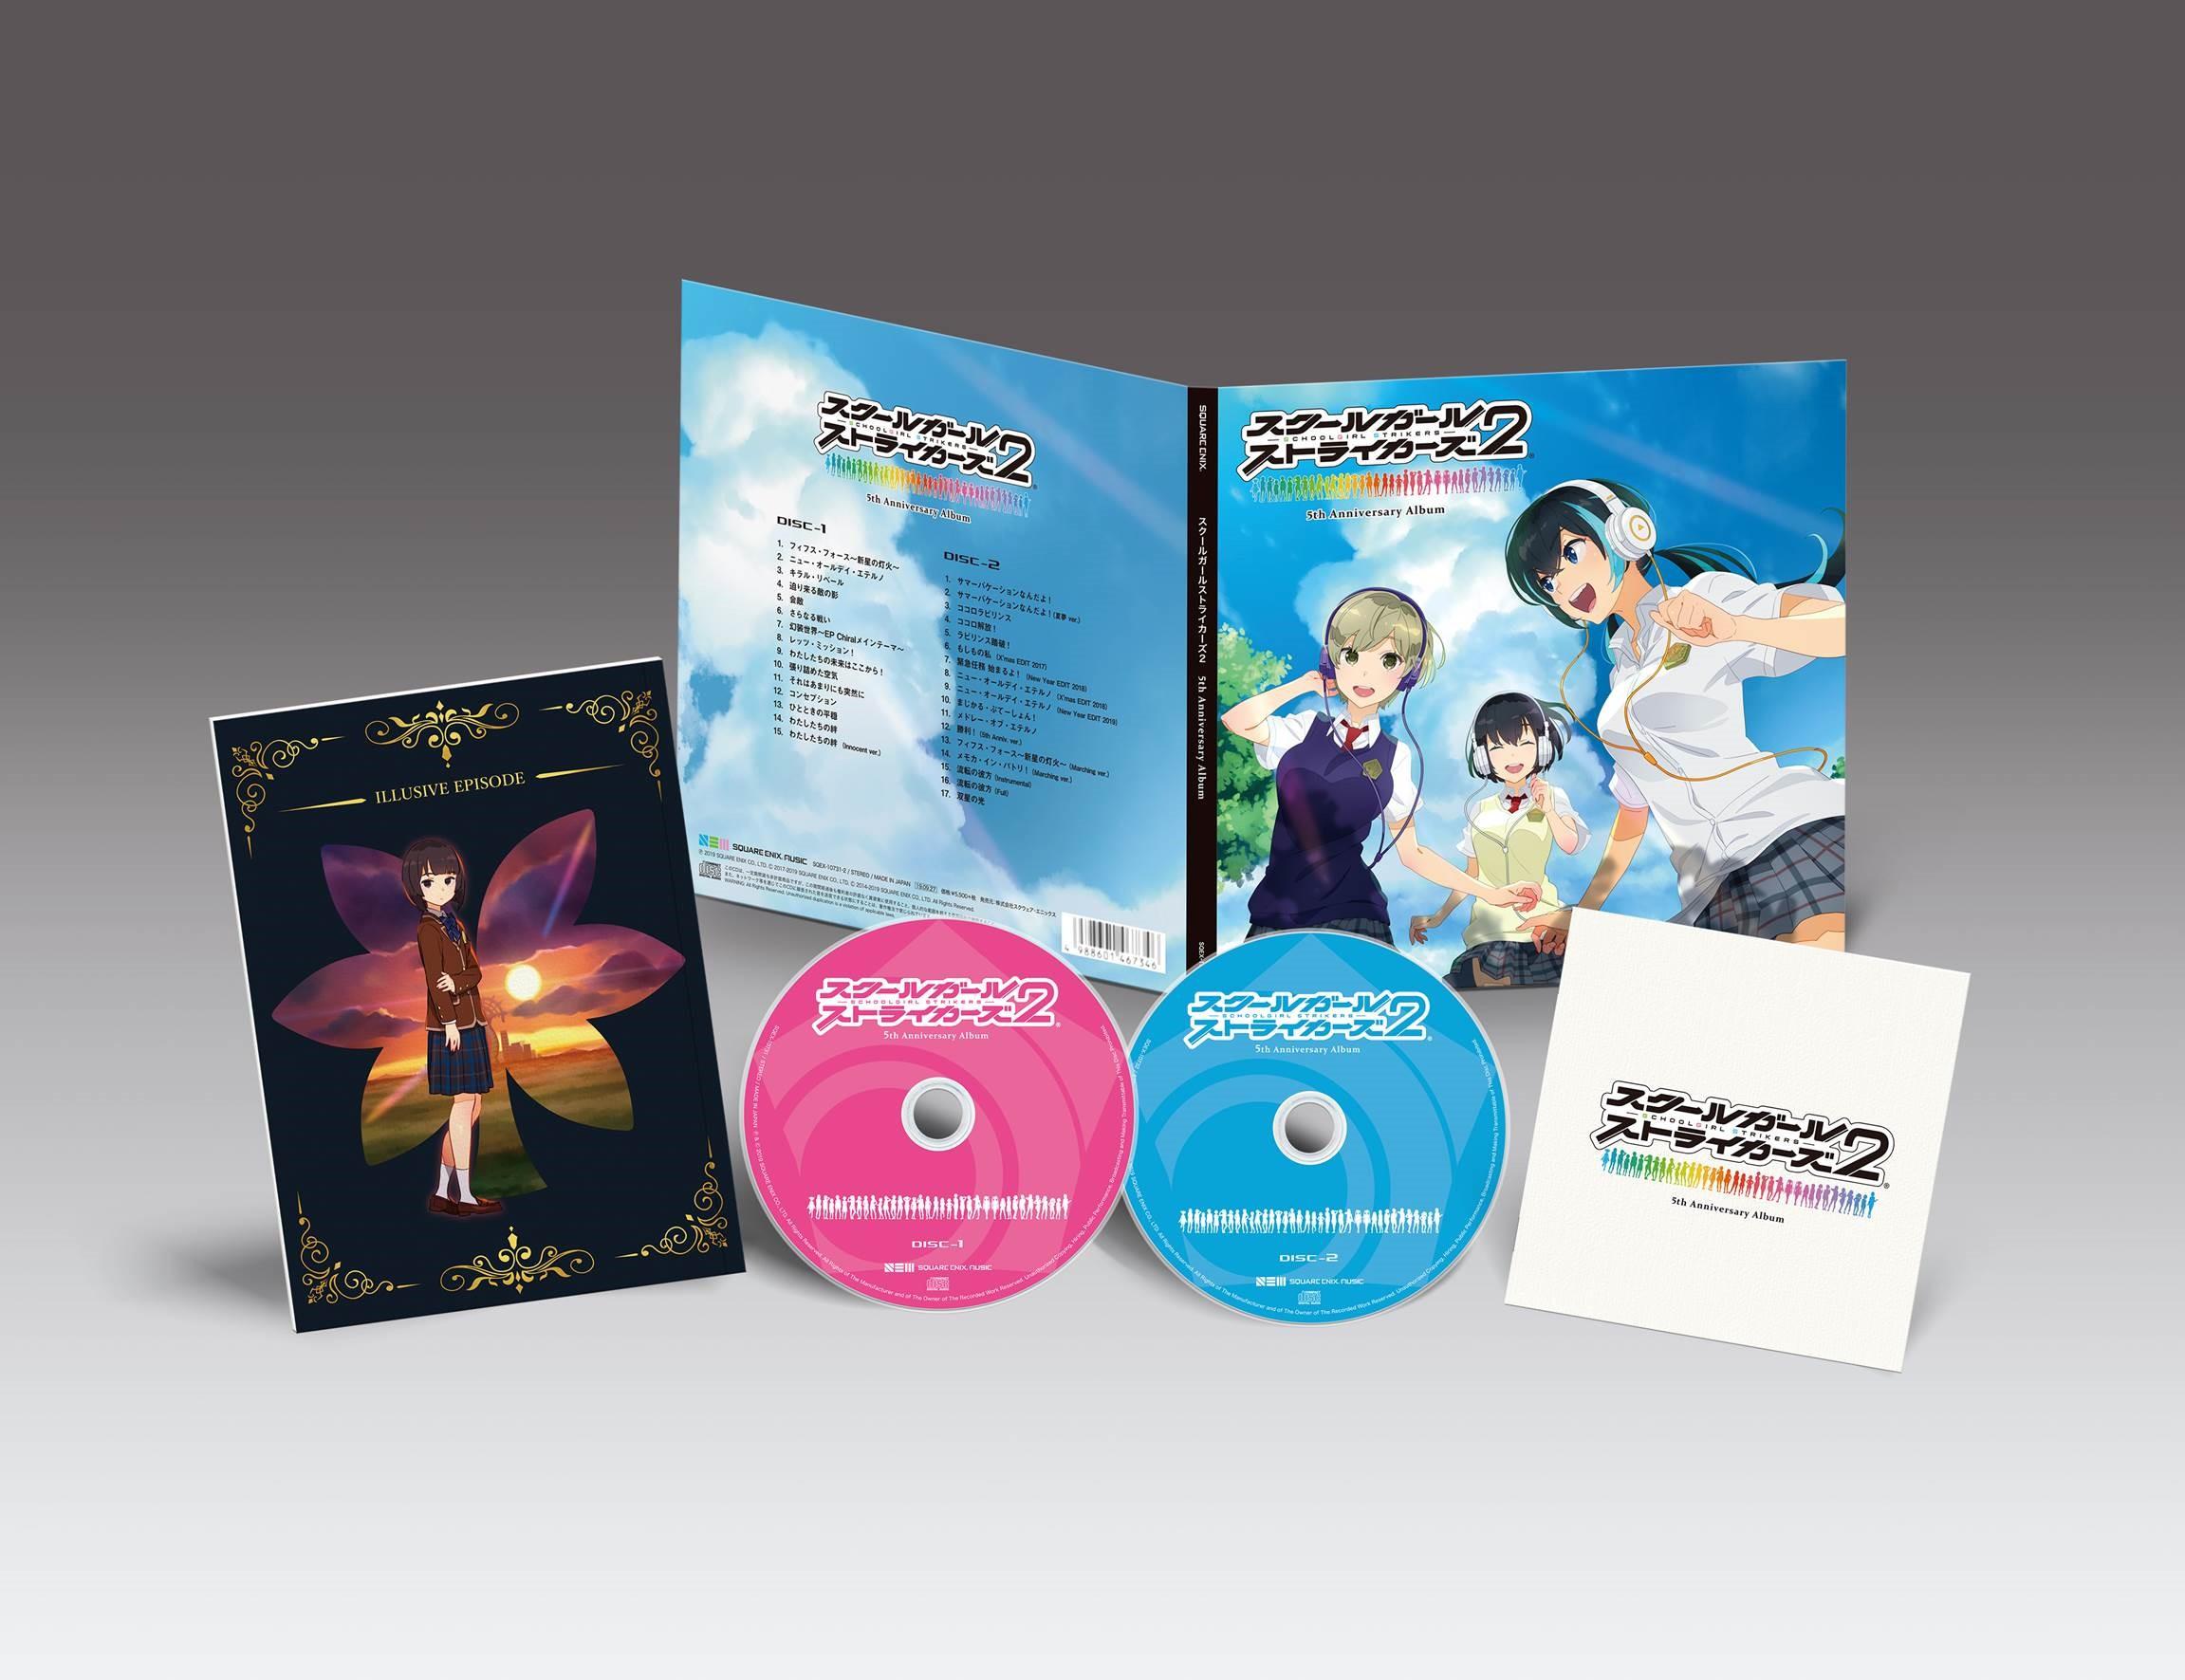 スクールガールストライカーズ25th Anniversary Album Line Up Square Enix Music Square Enix